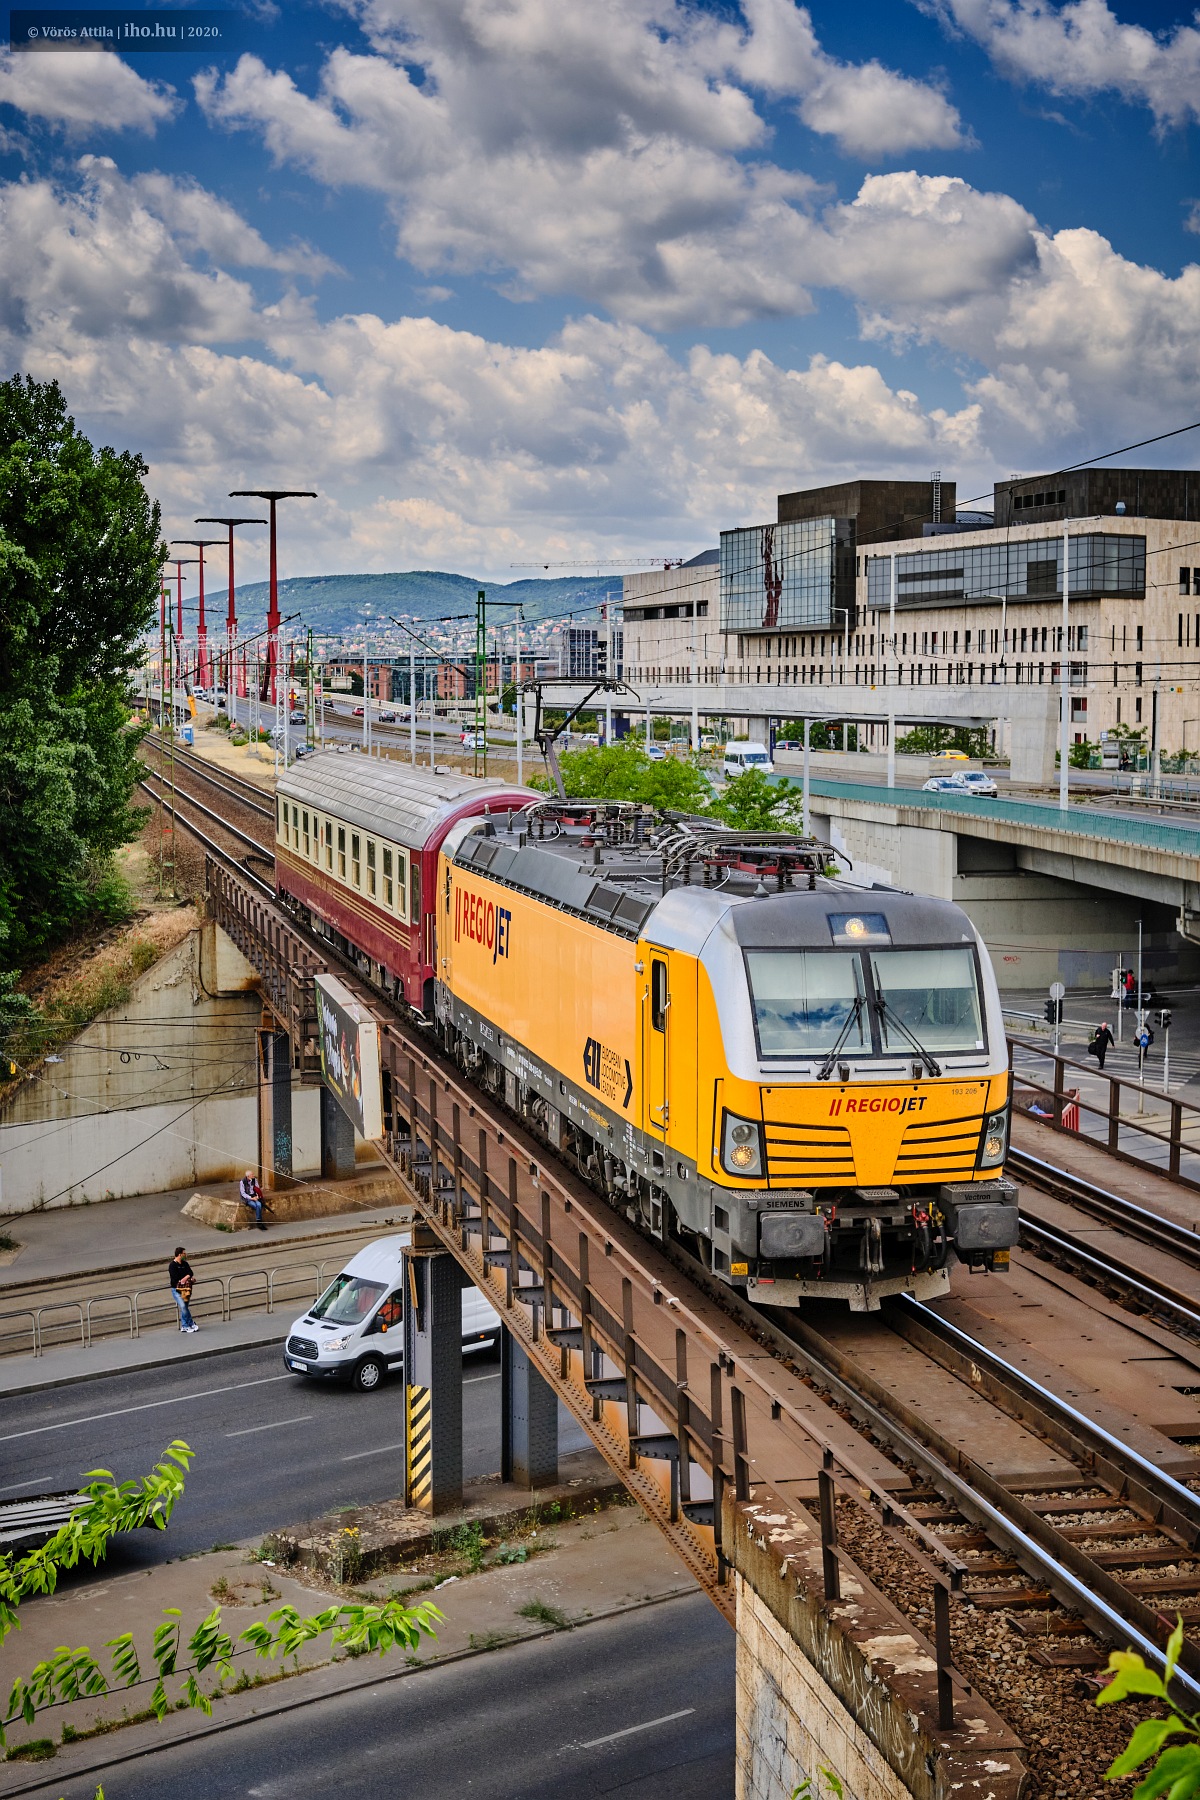 Hamarosan már nemcsak próbameneten látható Budapesten a sárga mozdony (fotó: Vörös Attila)